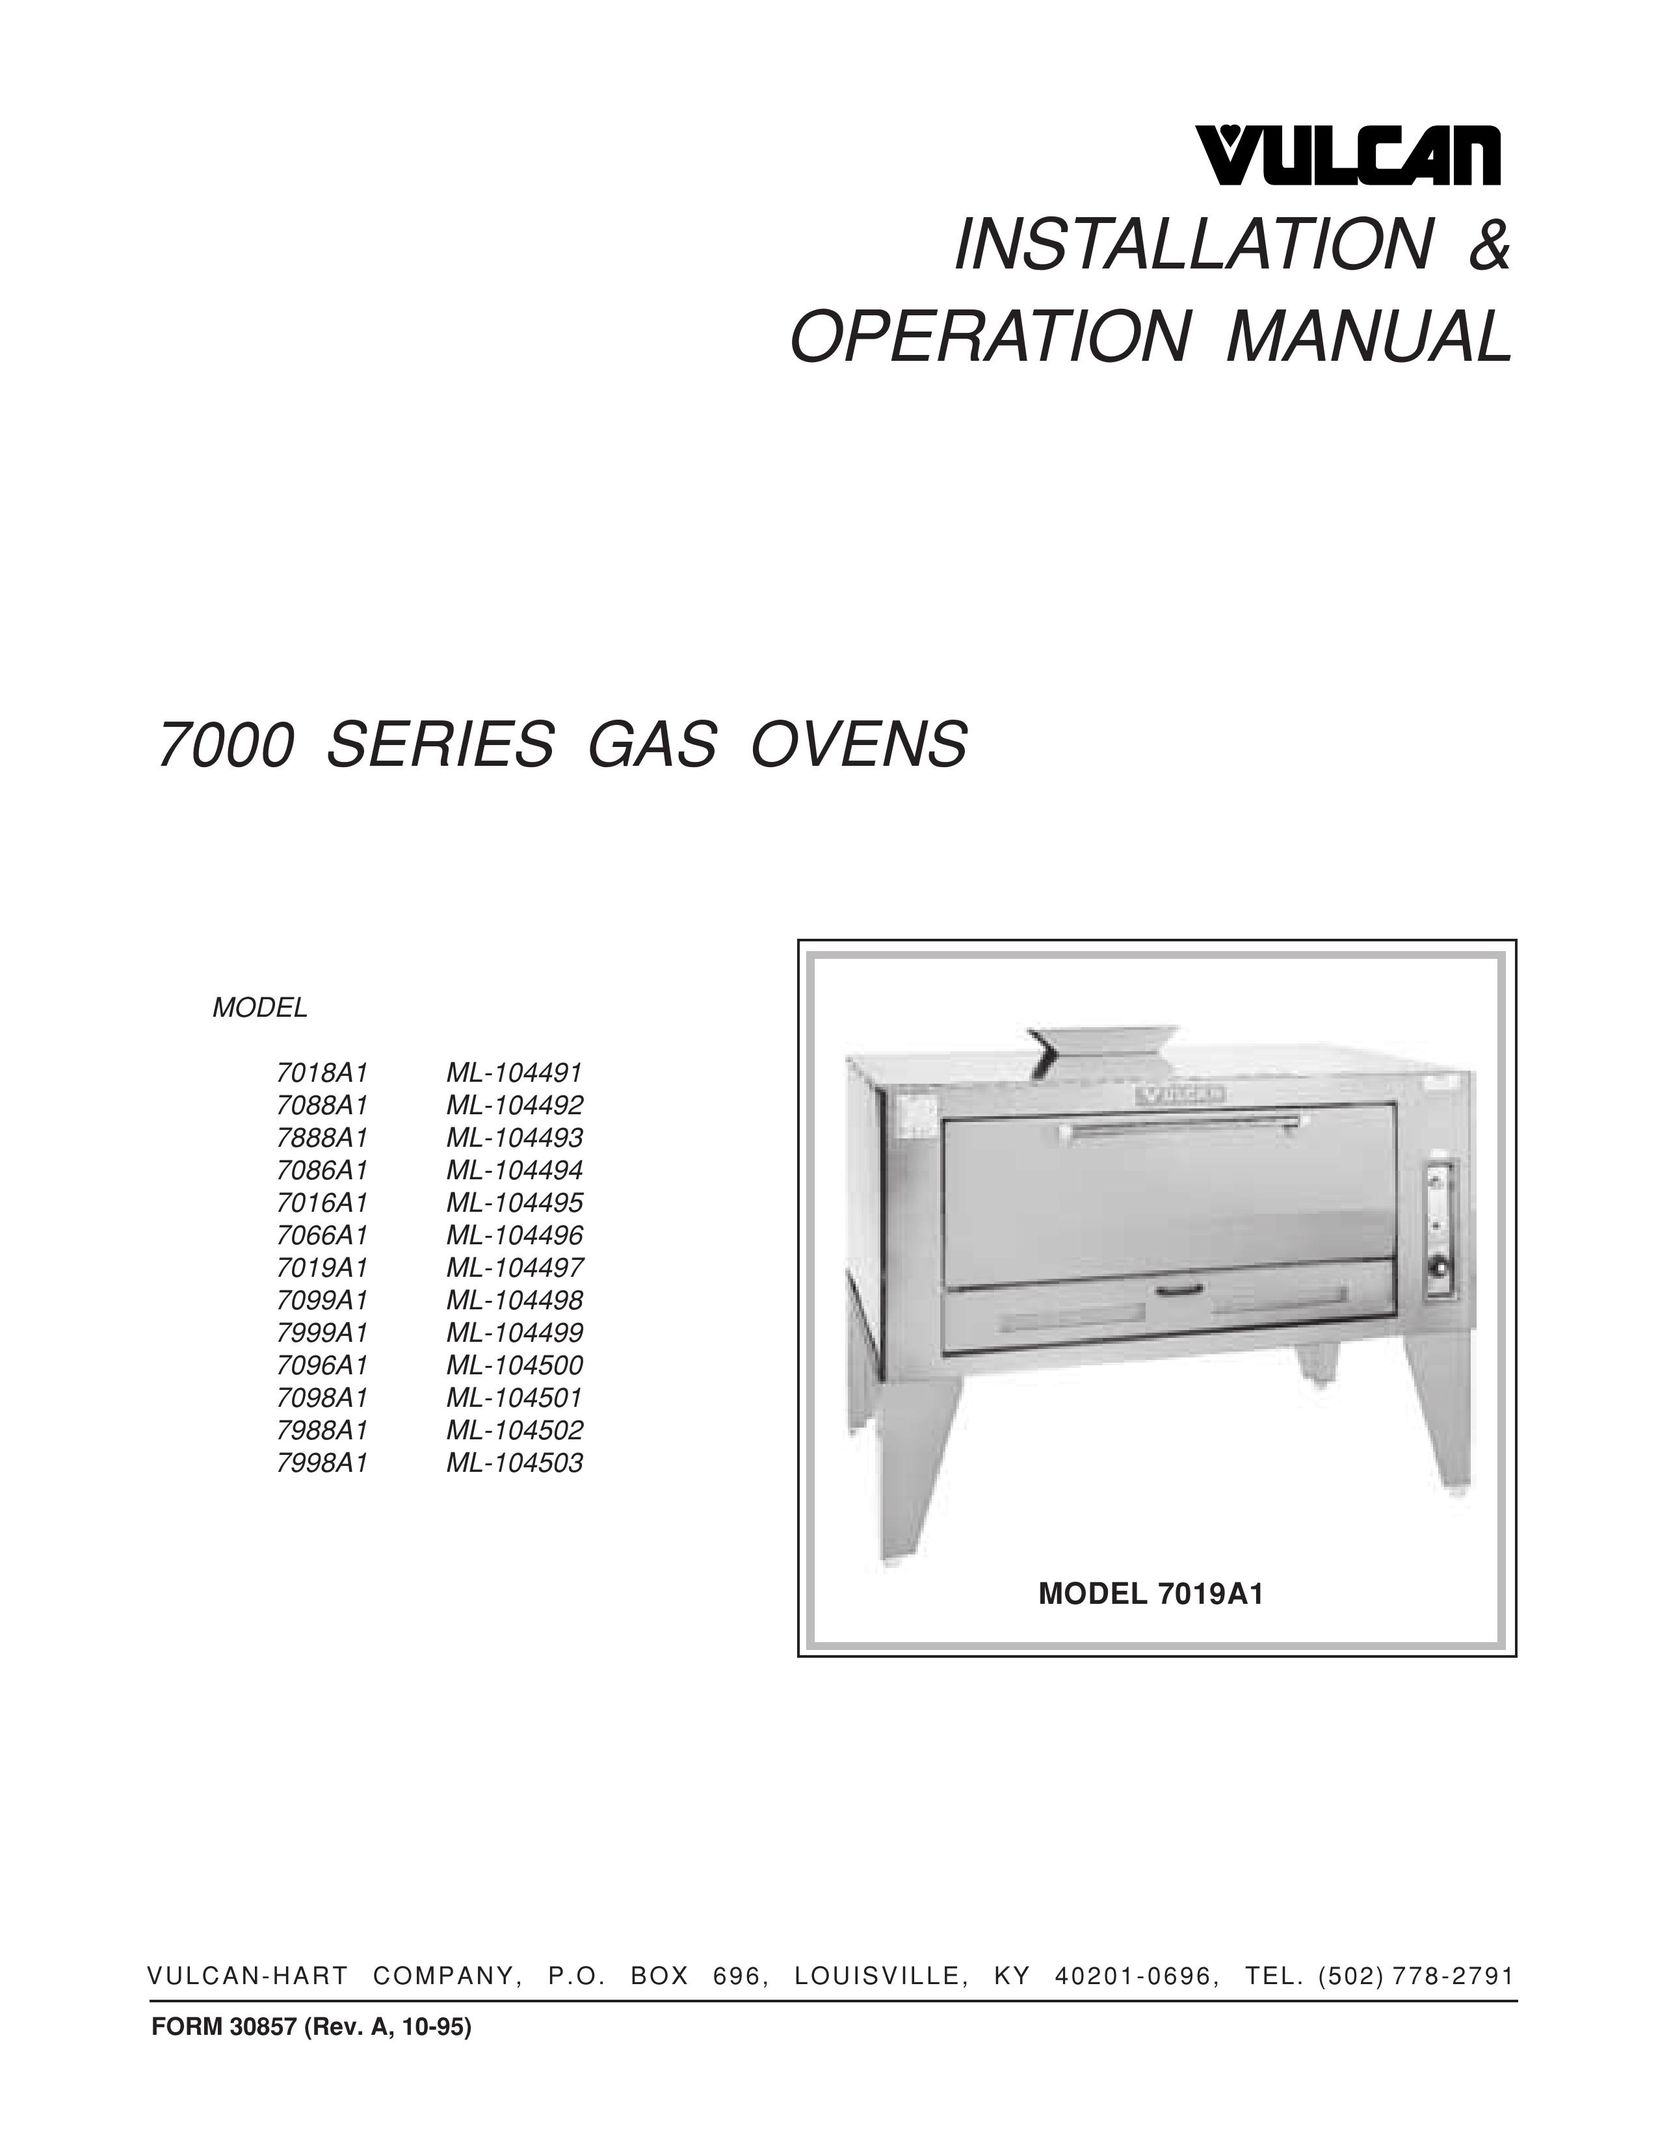 Vulcan-Hart 7998A1 ML-104503 Oven User Manual